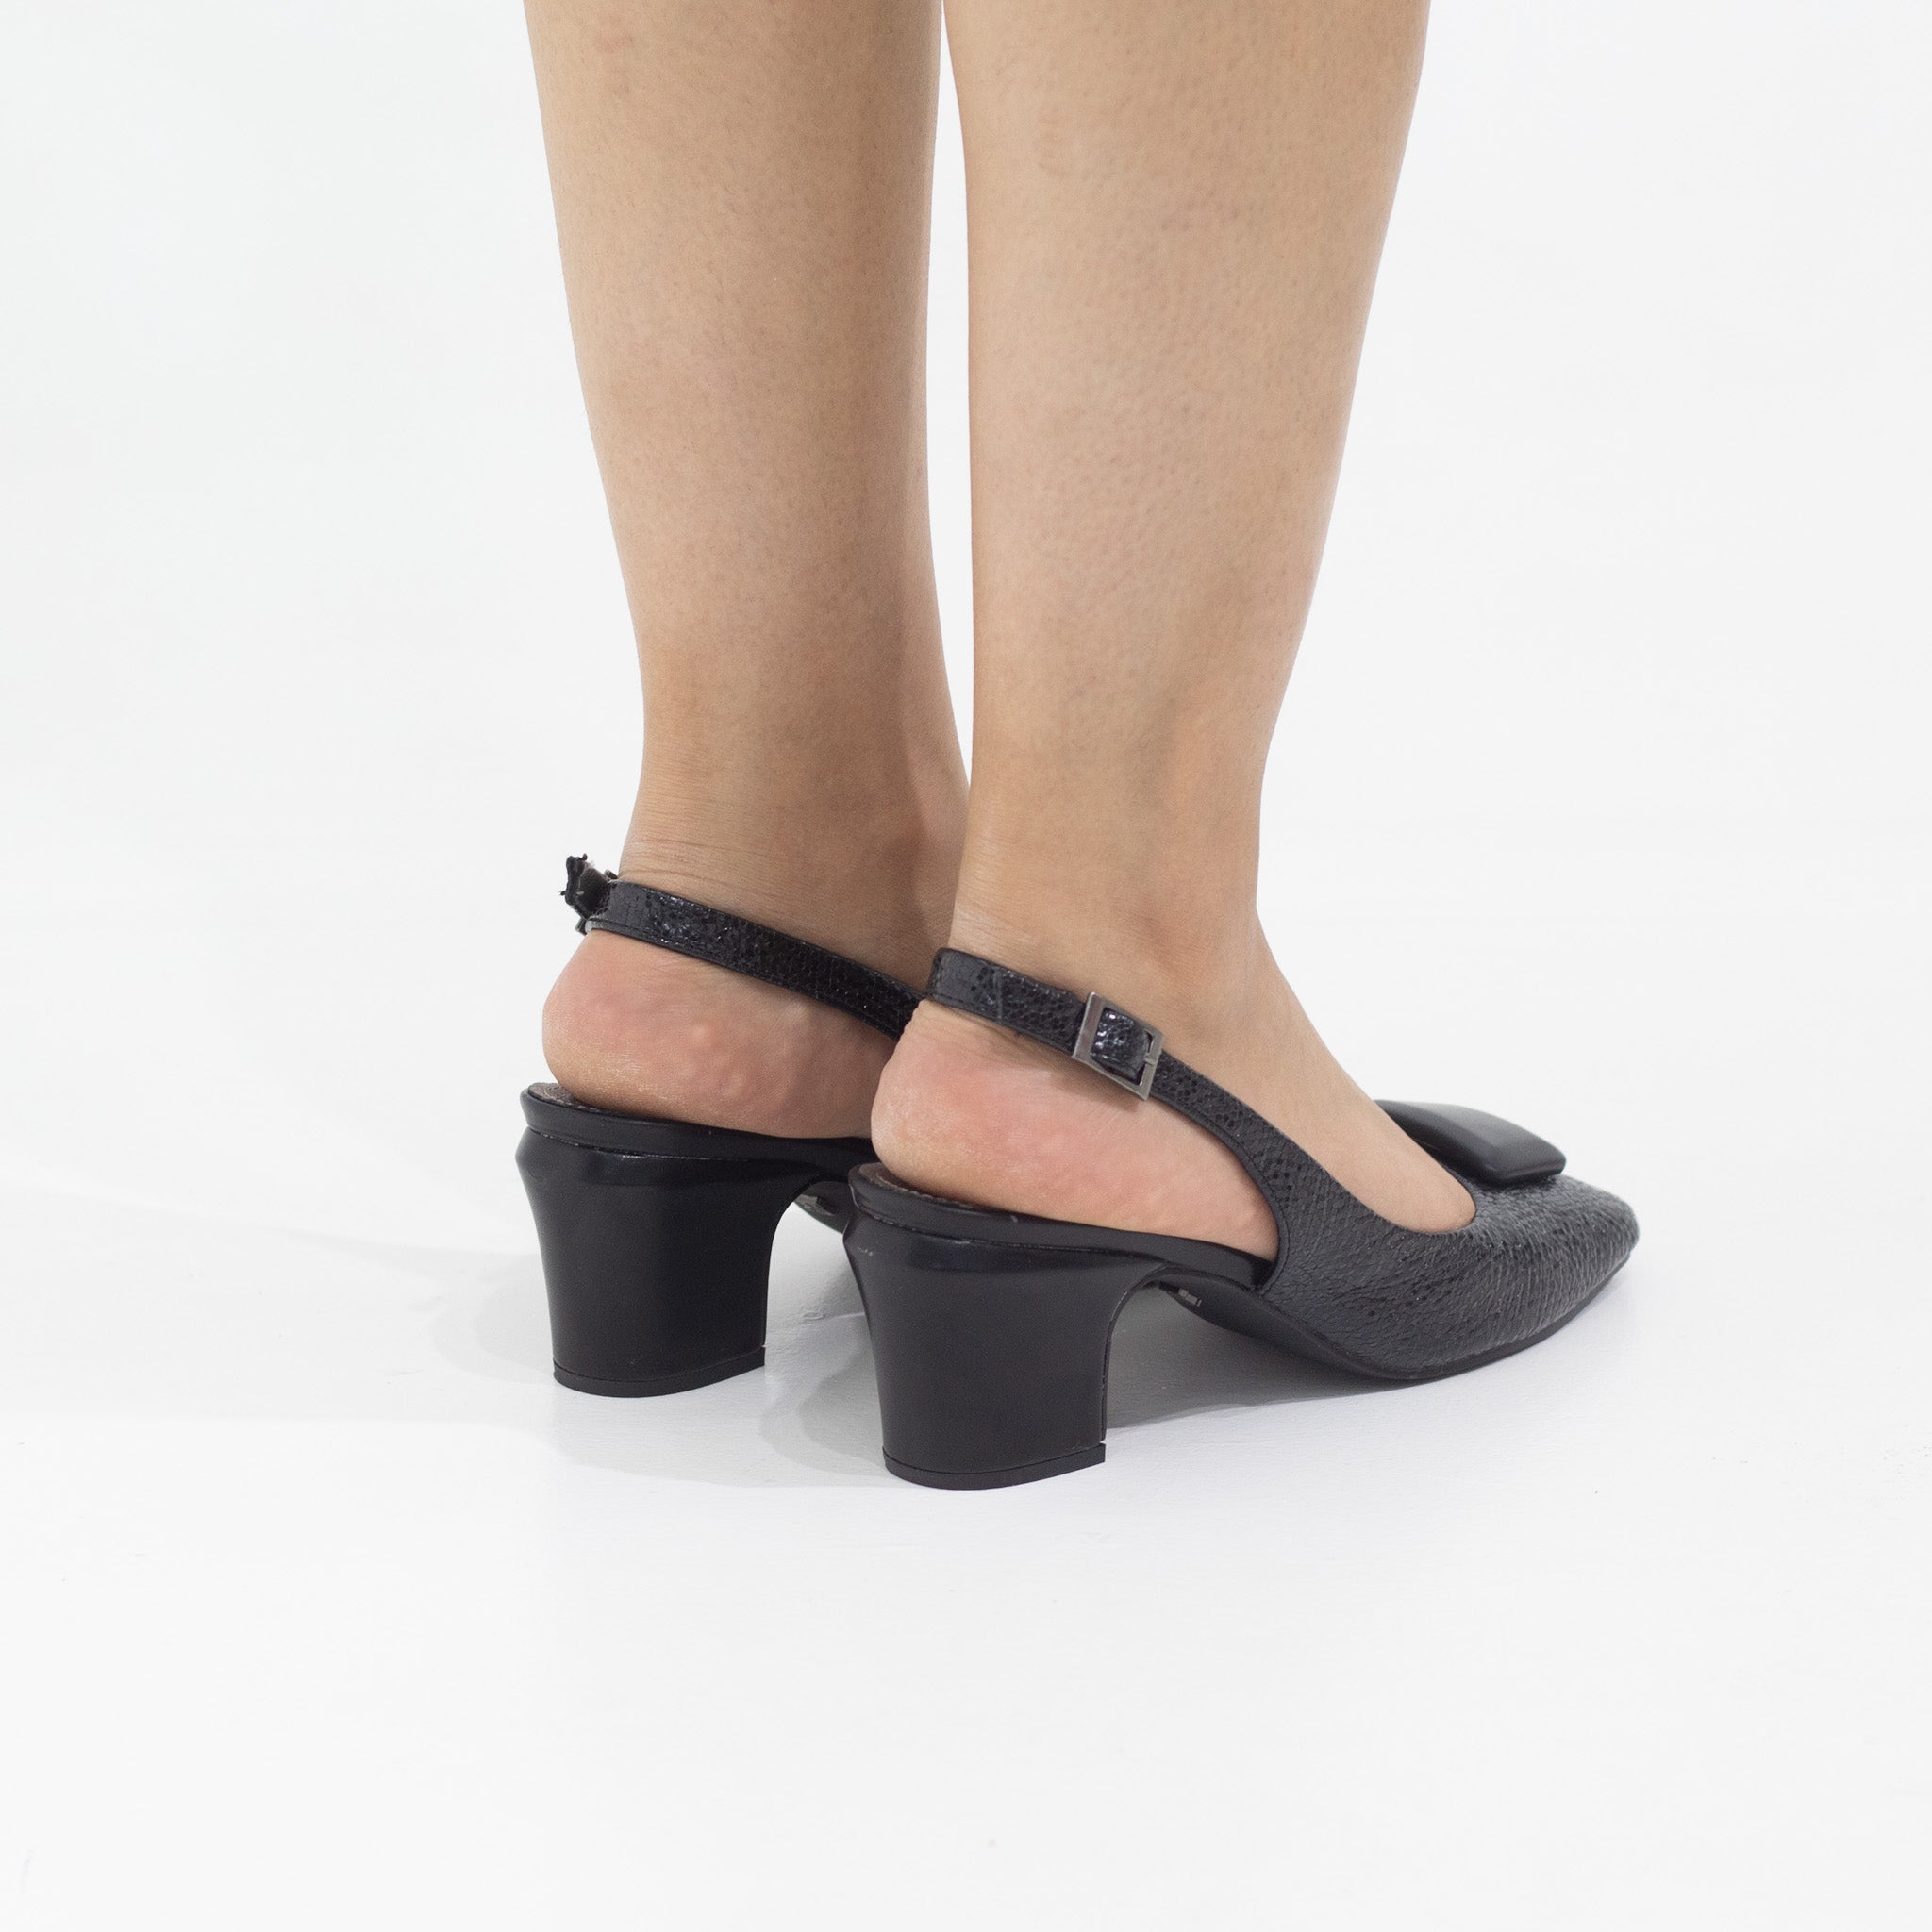 Black block 5.5cm heel sling back with sqr trim pumps blaze